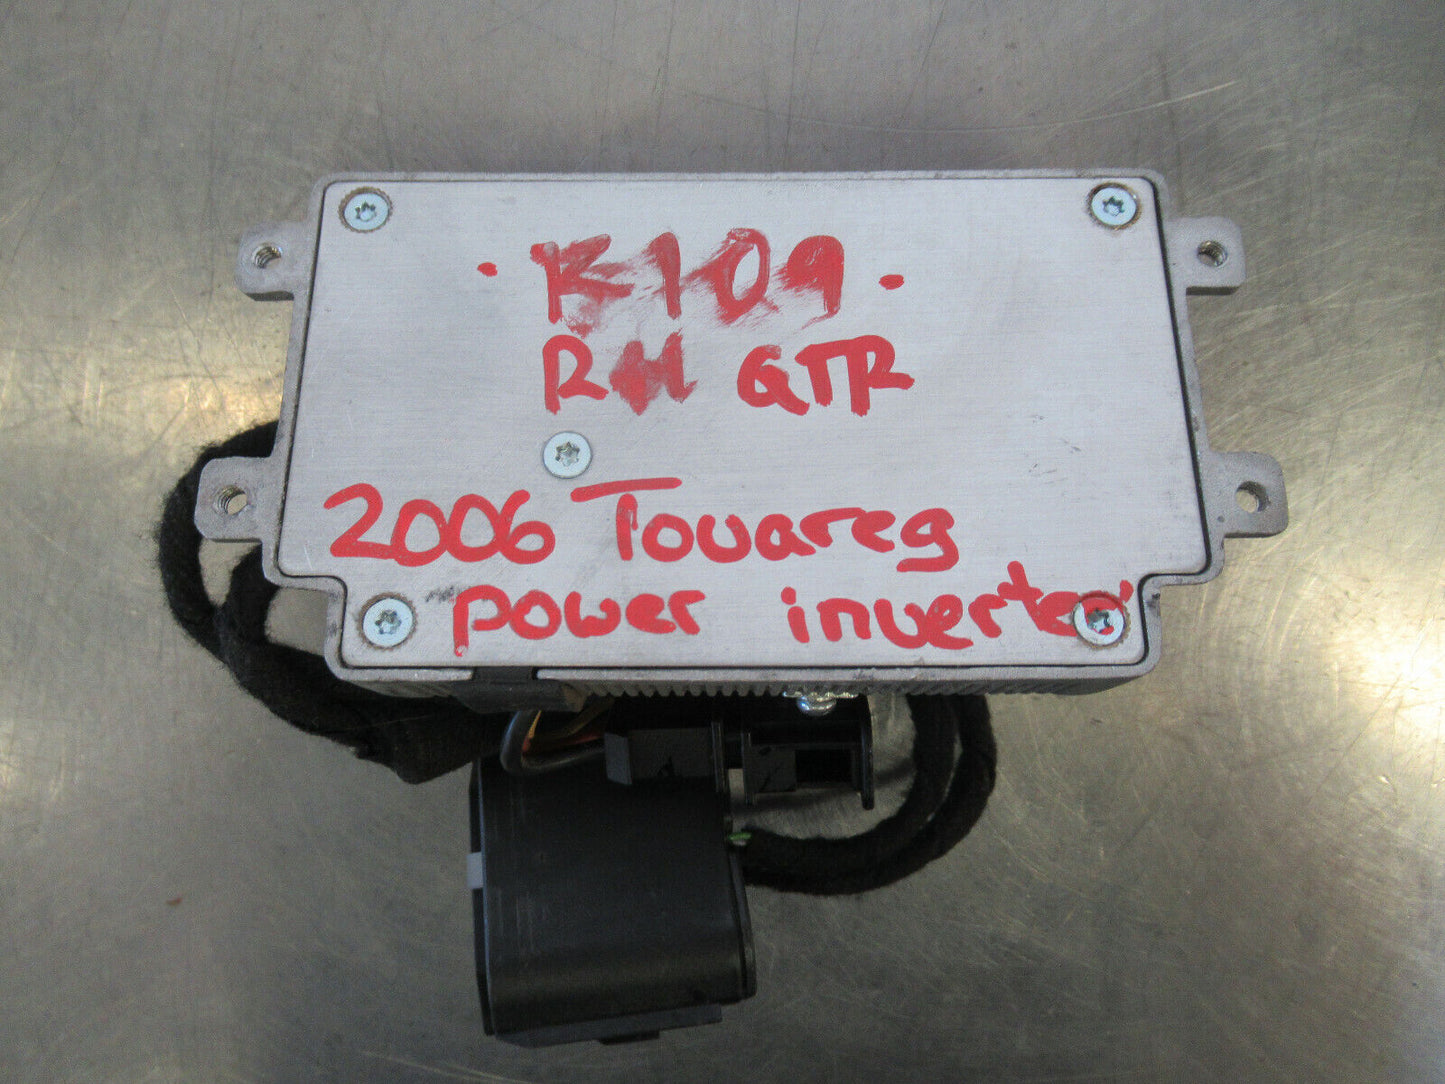 K109 2006 VW TOUAREG power inverter module 7l6907155a